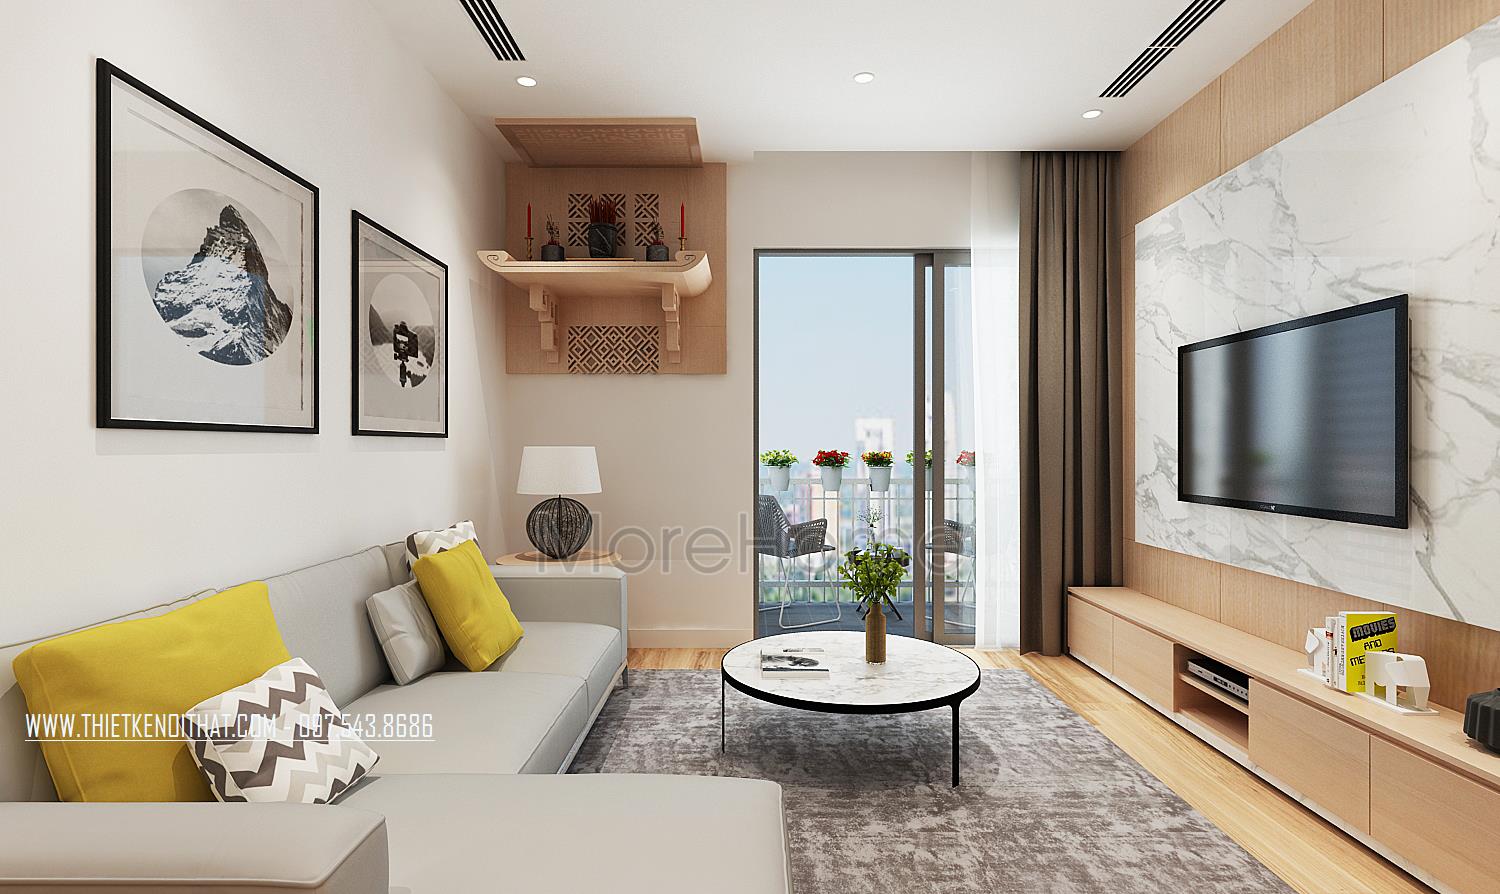 Thiết kế nội thất chung cư Morehome sẽ khiến bạn bị mê hoặc bởi sự hiện đại, sang trọng và tiện nghi trong căn hộ của mình. Với những góc nhìn độc đáo và sáng tạo, thiệt kế nội thất Morehome sẽ đưa bạn đến một trải nghiệm sống đầy đủ và tốt đẹp hơn.